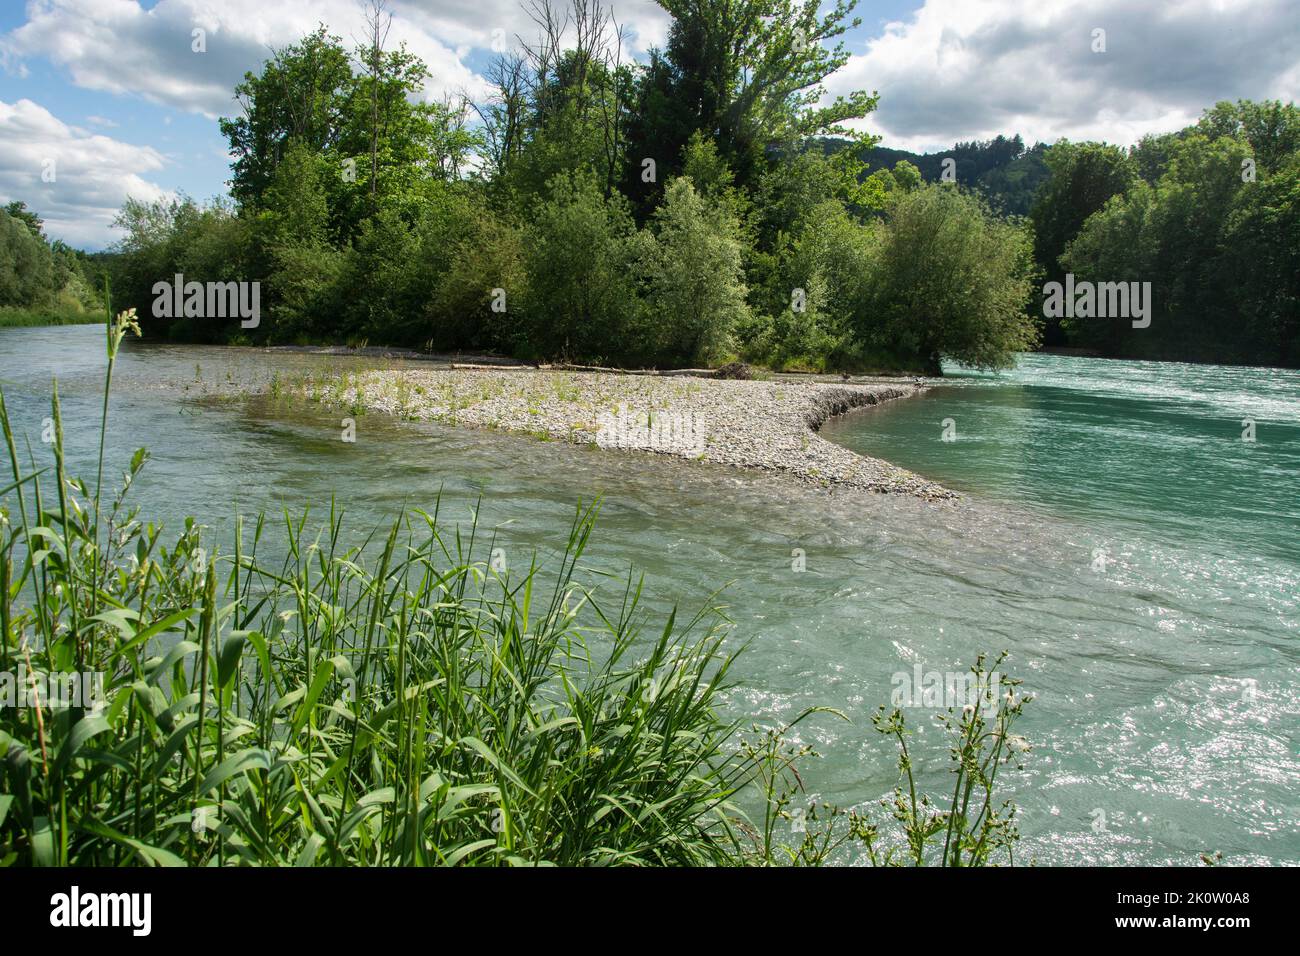 Die rentaurierte Aare zwischen Münsingen und Bern, ein Smaragd-Naturschutzgebiet und Aue von nationaler Bedeutung Stock Photo